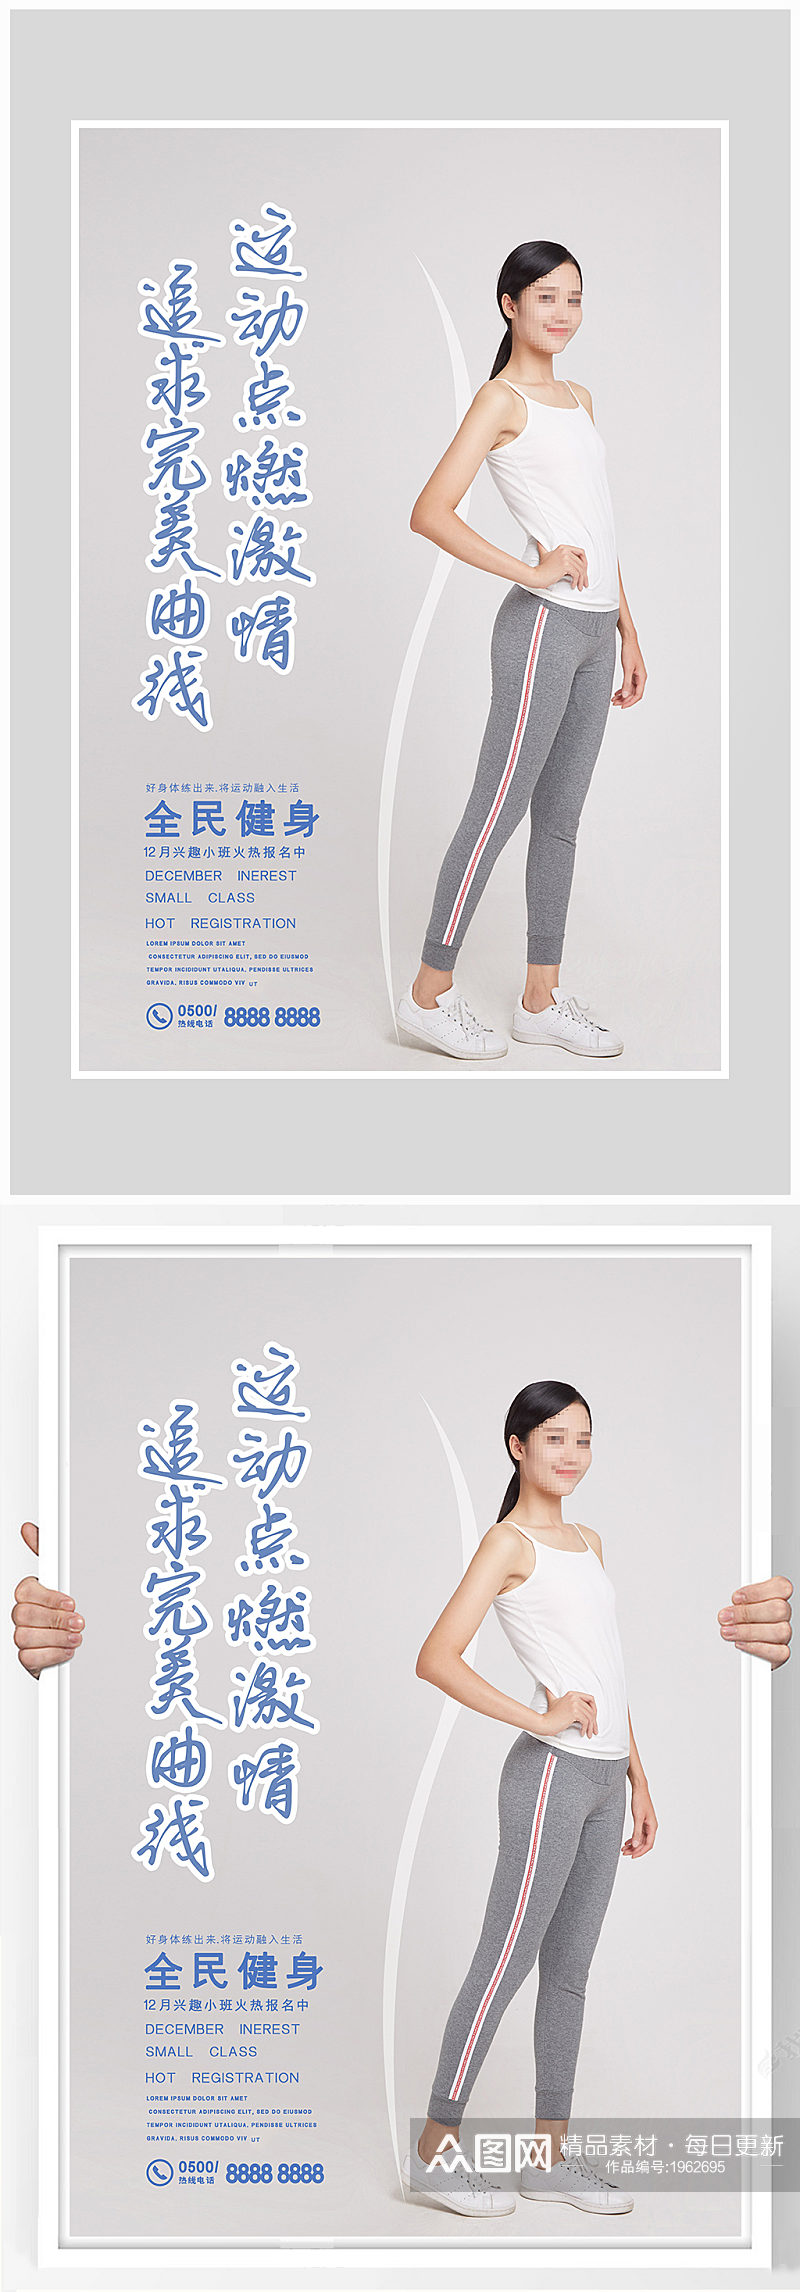 创意质感健身运动瘦身海报设计素材